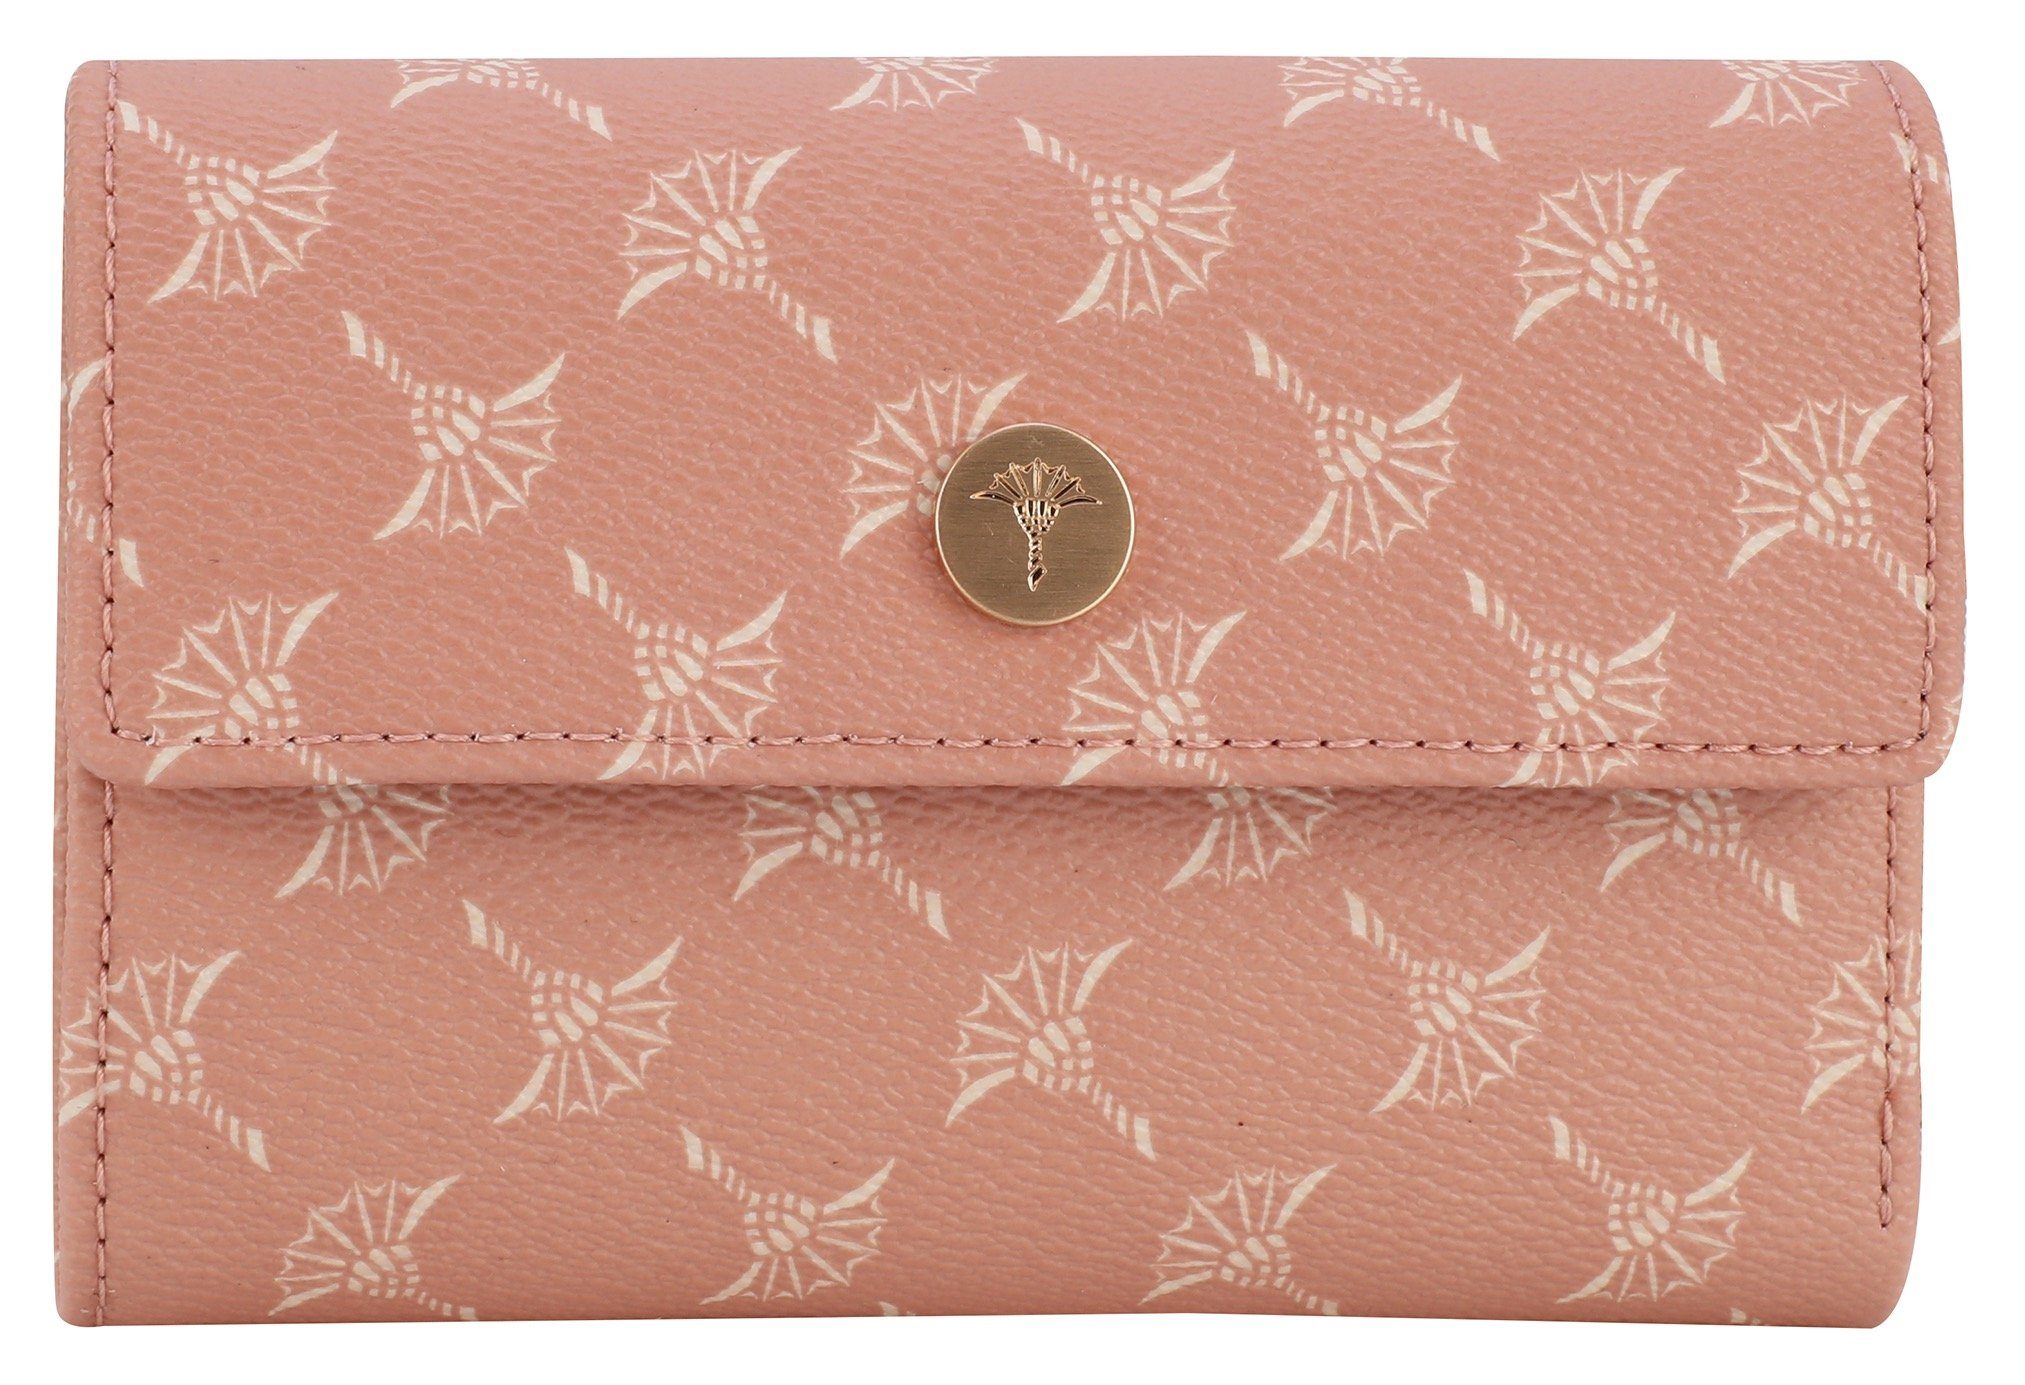 Joop! Geldbörse cortina 1.0 cosma purse rosa praktischen Format mh10f, im